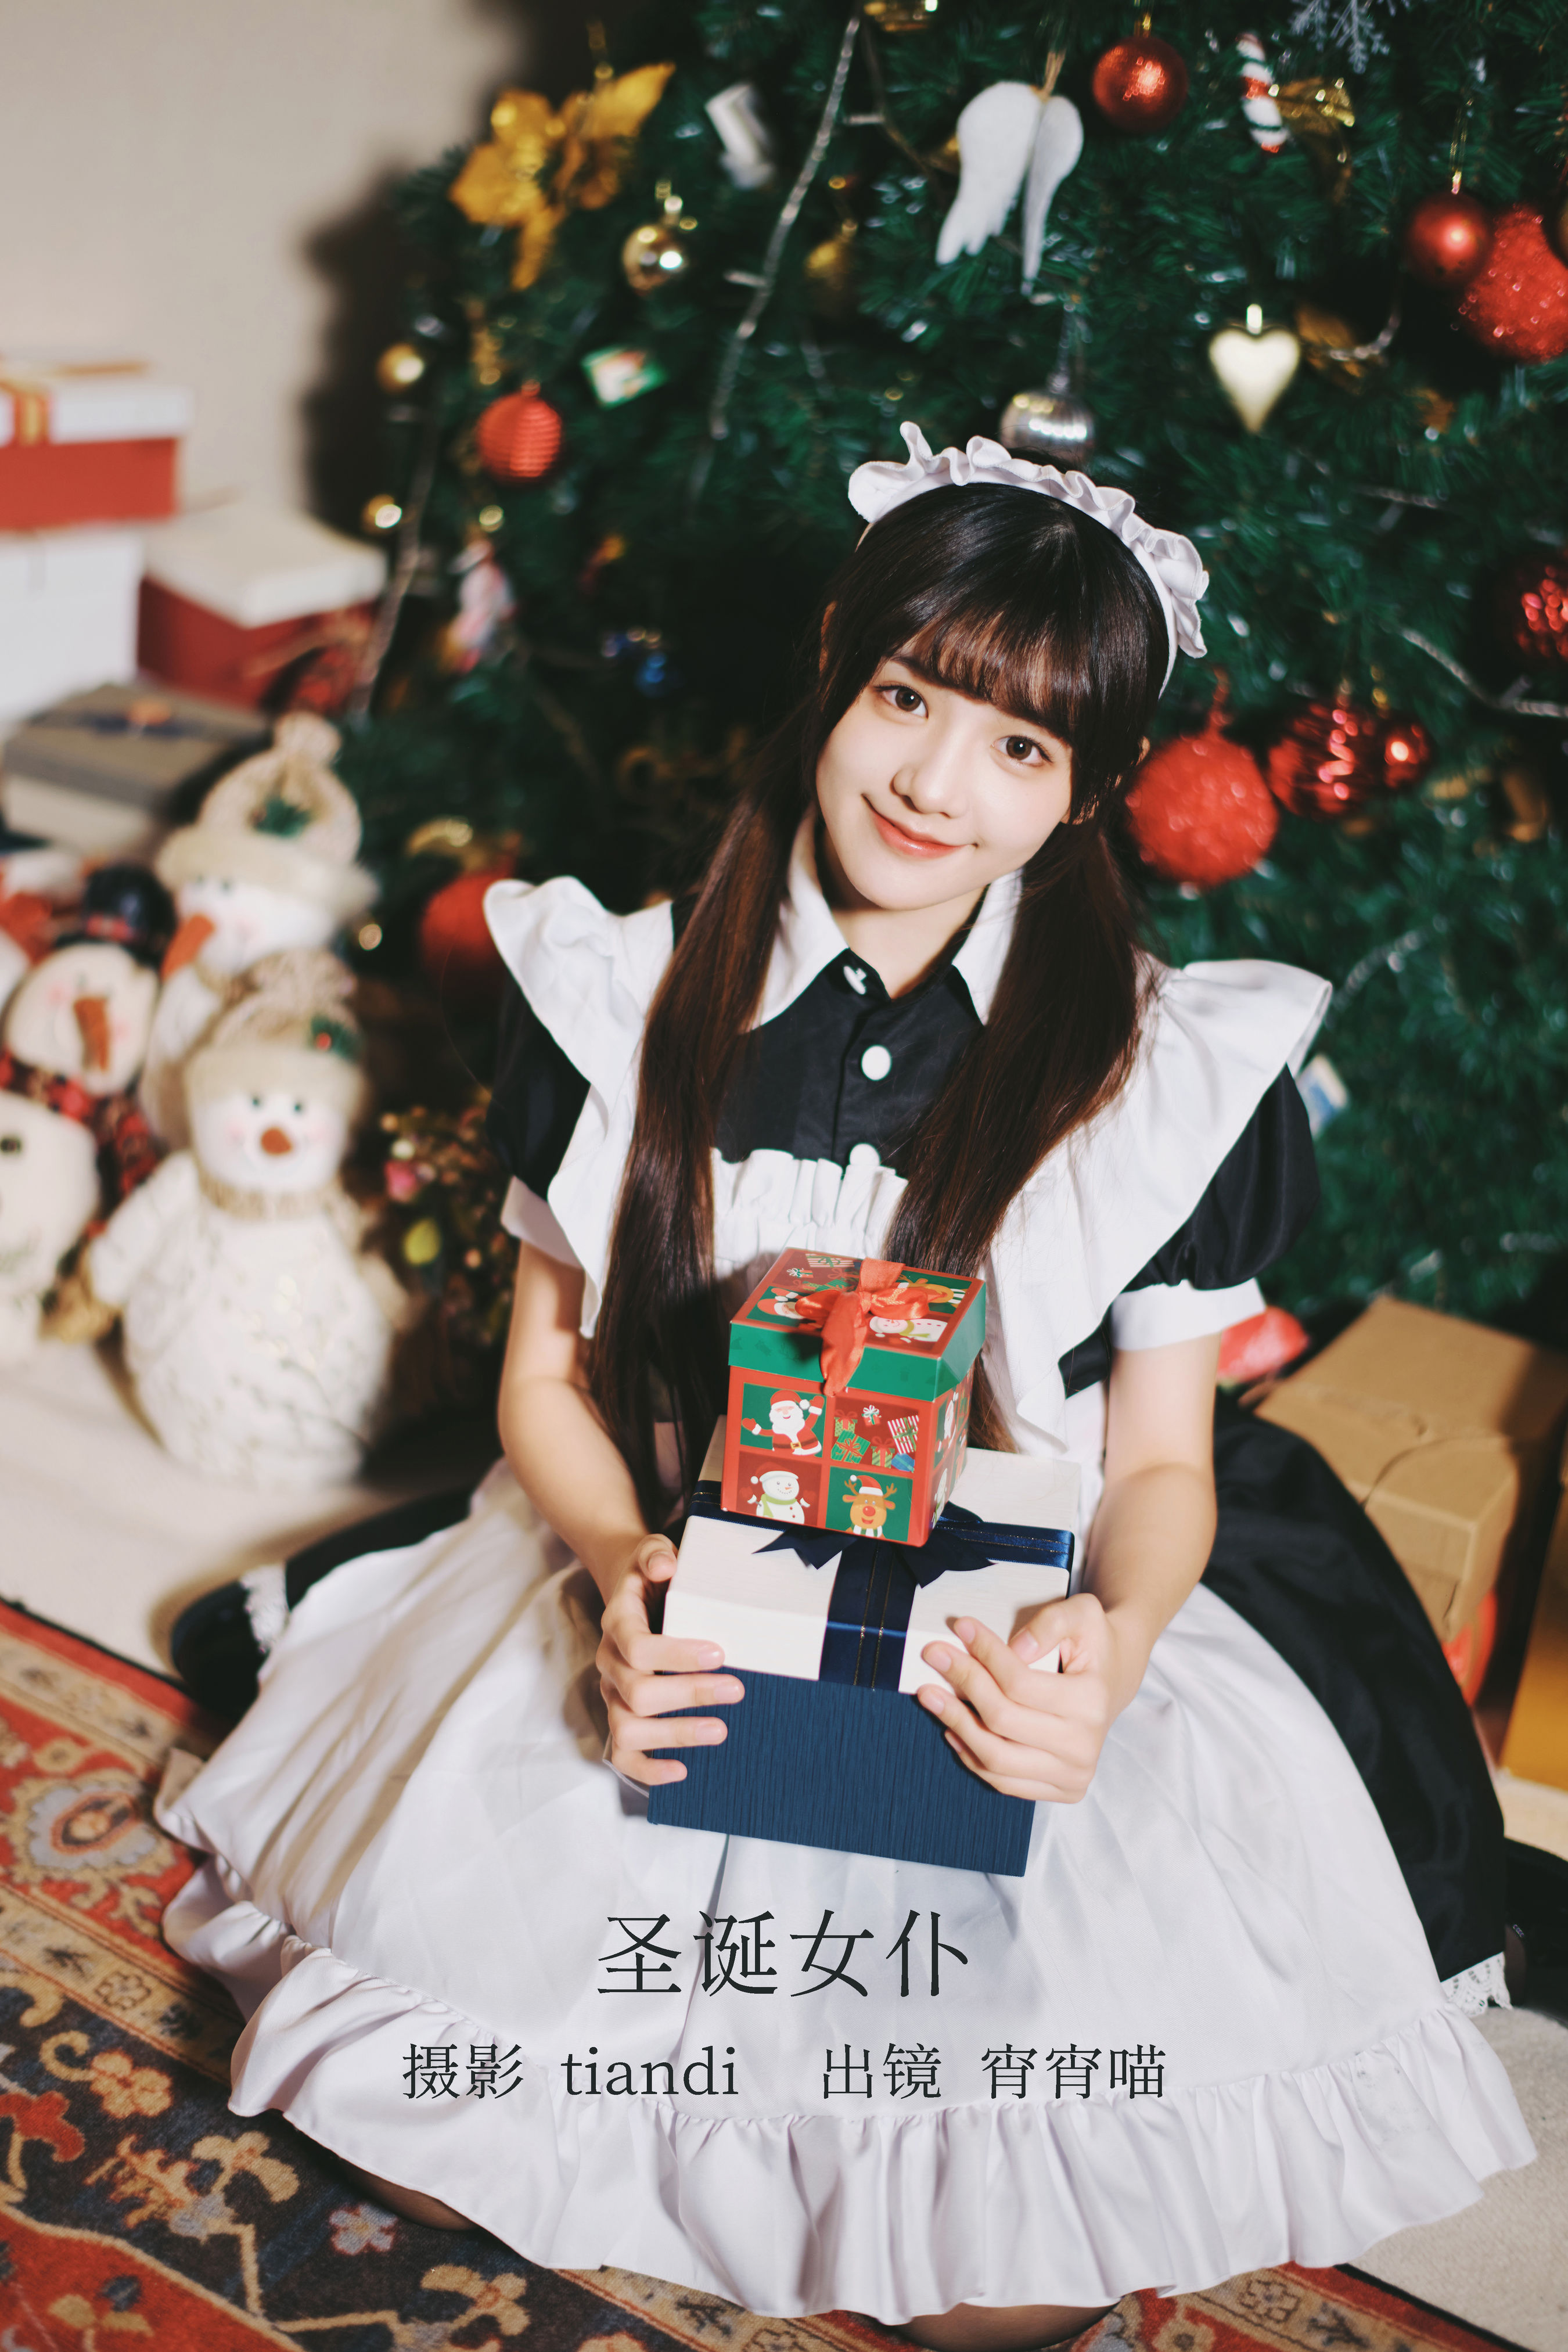 圣诞女仆 可爱 美少女 节日 圣诞节 写真&YiTuYu艺图语-1